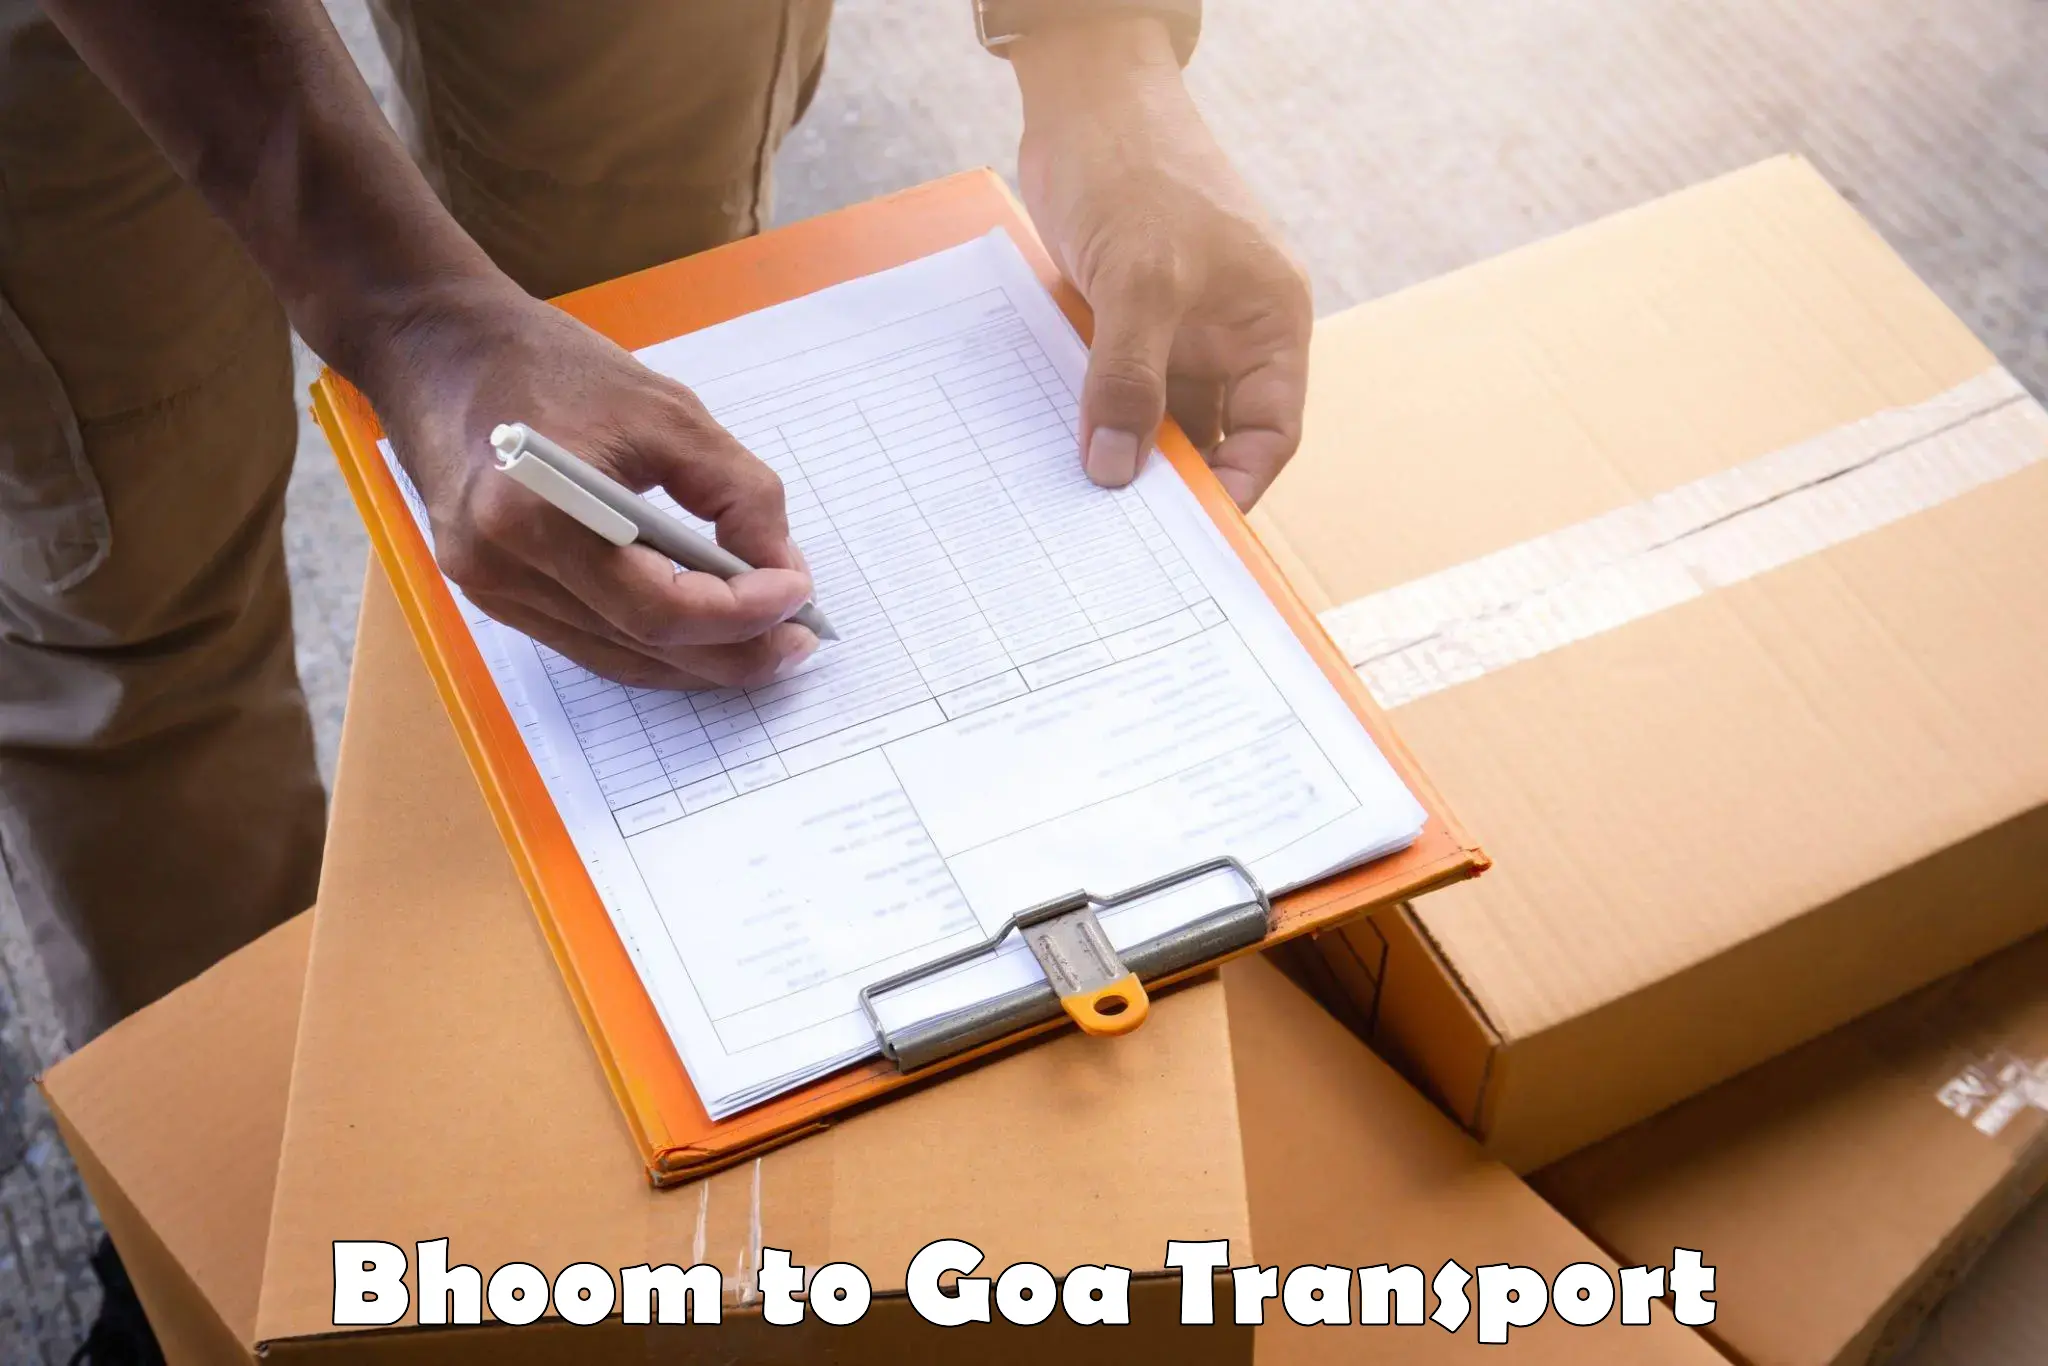 Nearest transport service Bhoom to Ponda